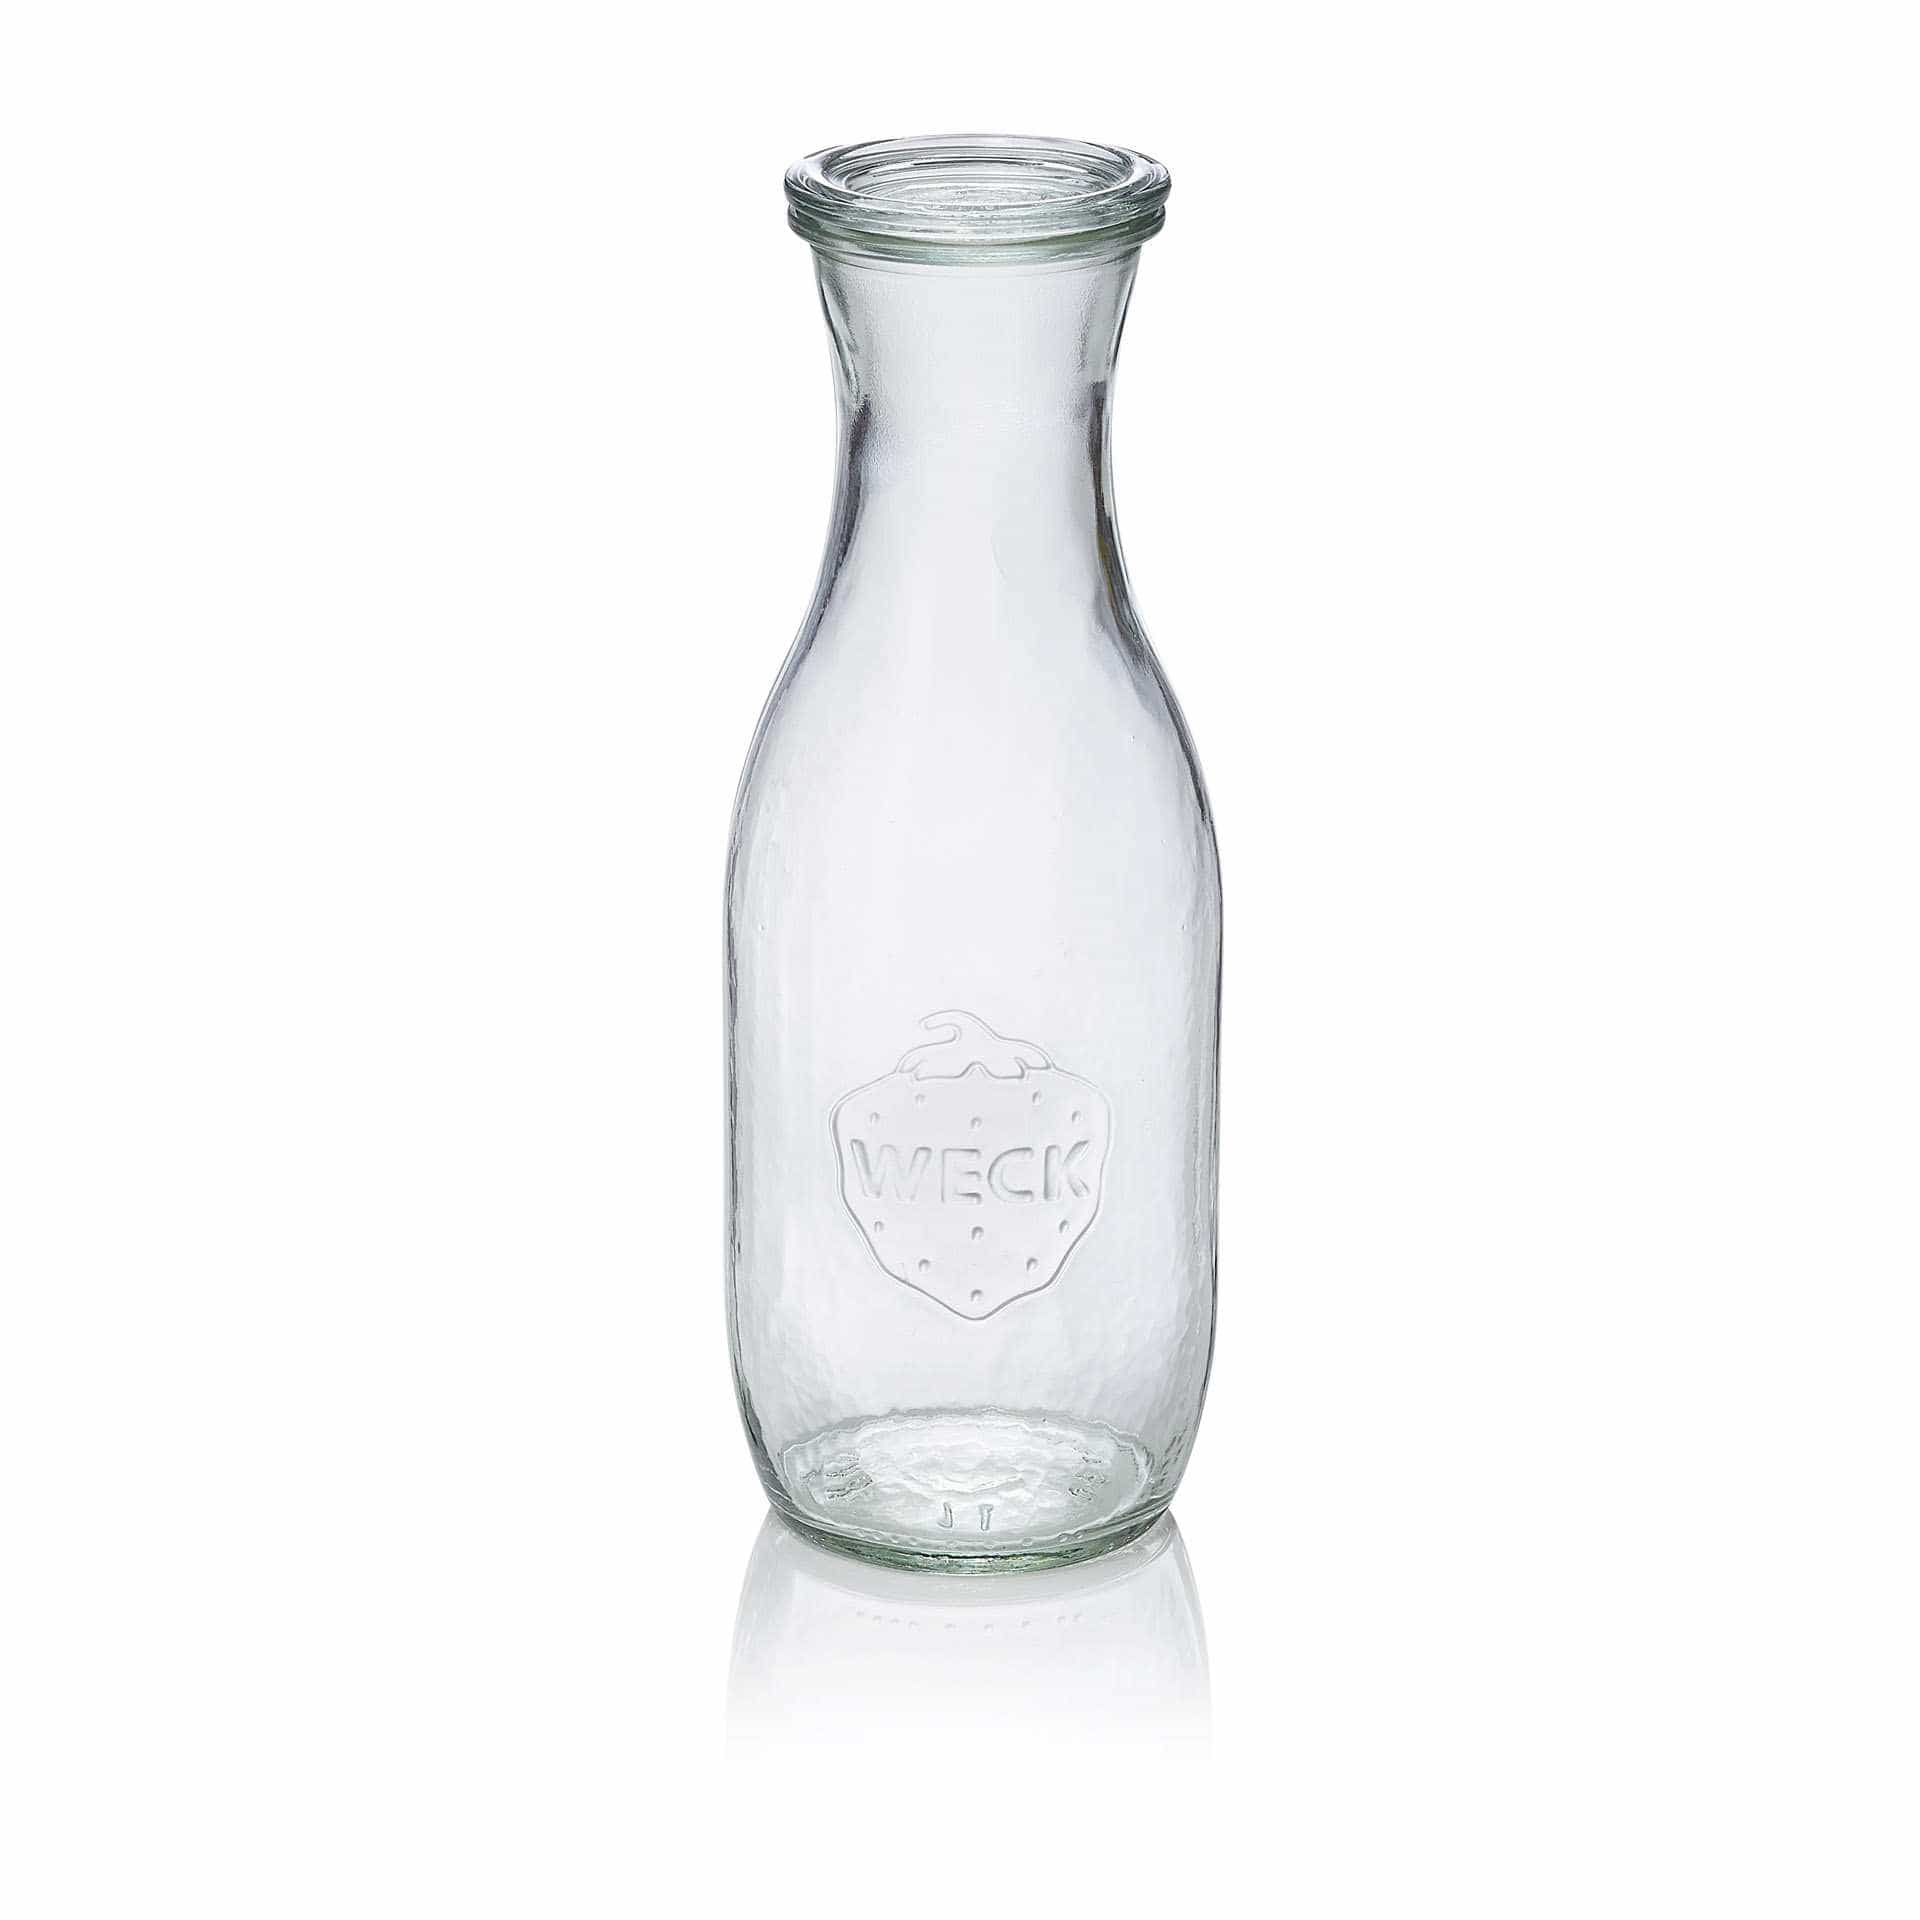 Saftflasche - Set á 6 Stück - Serie Bottle - Abm. 25,0 cm - Ø oben / unten 6,0 / 9,2 cm - Inhalt 1,062 l - Glas - 766-A